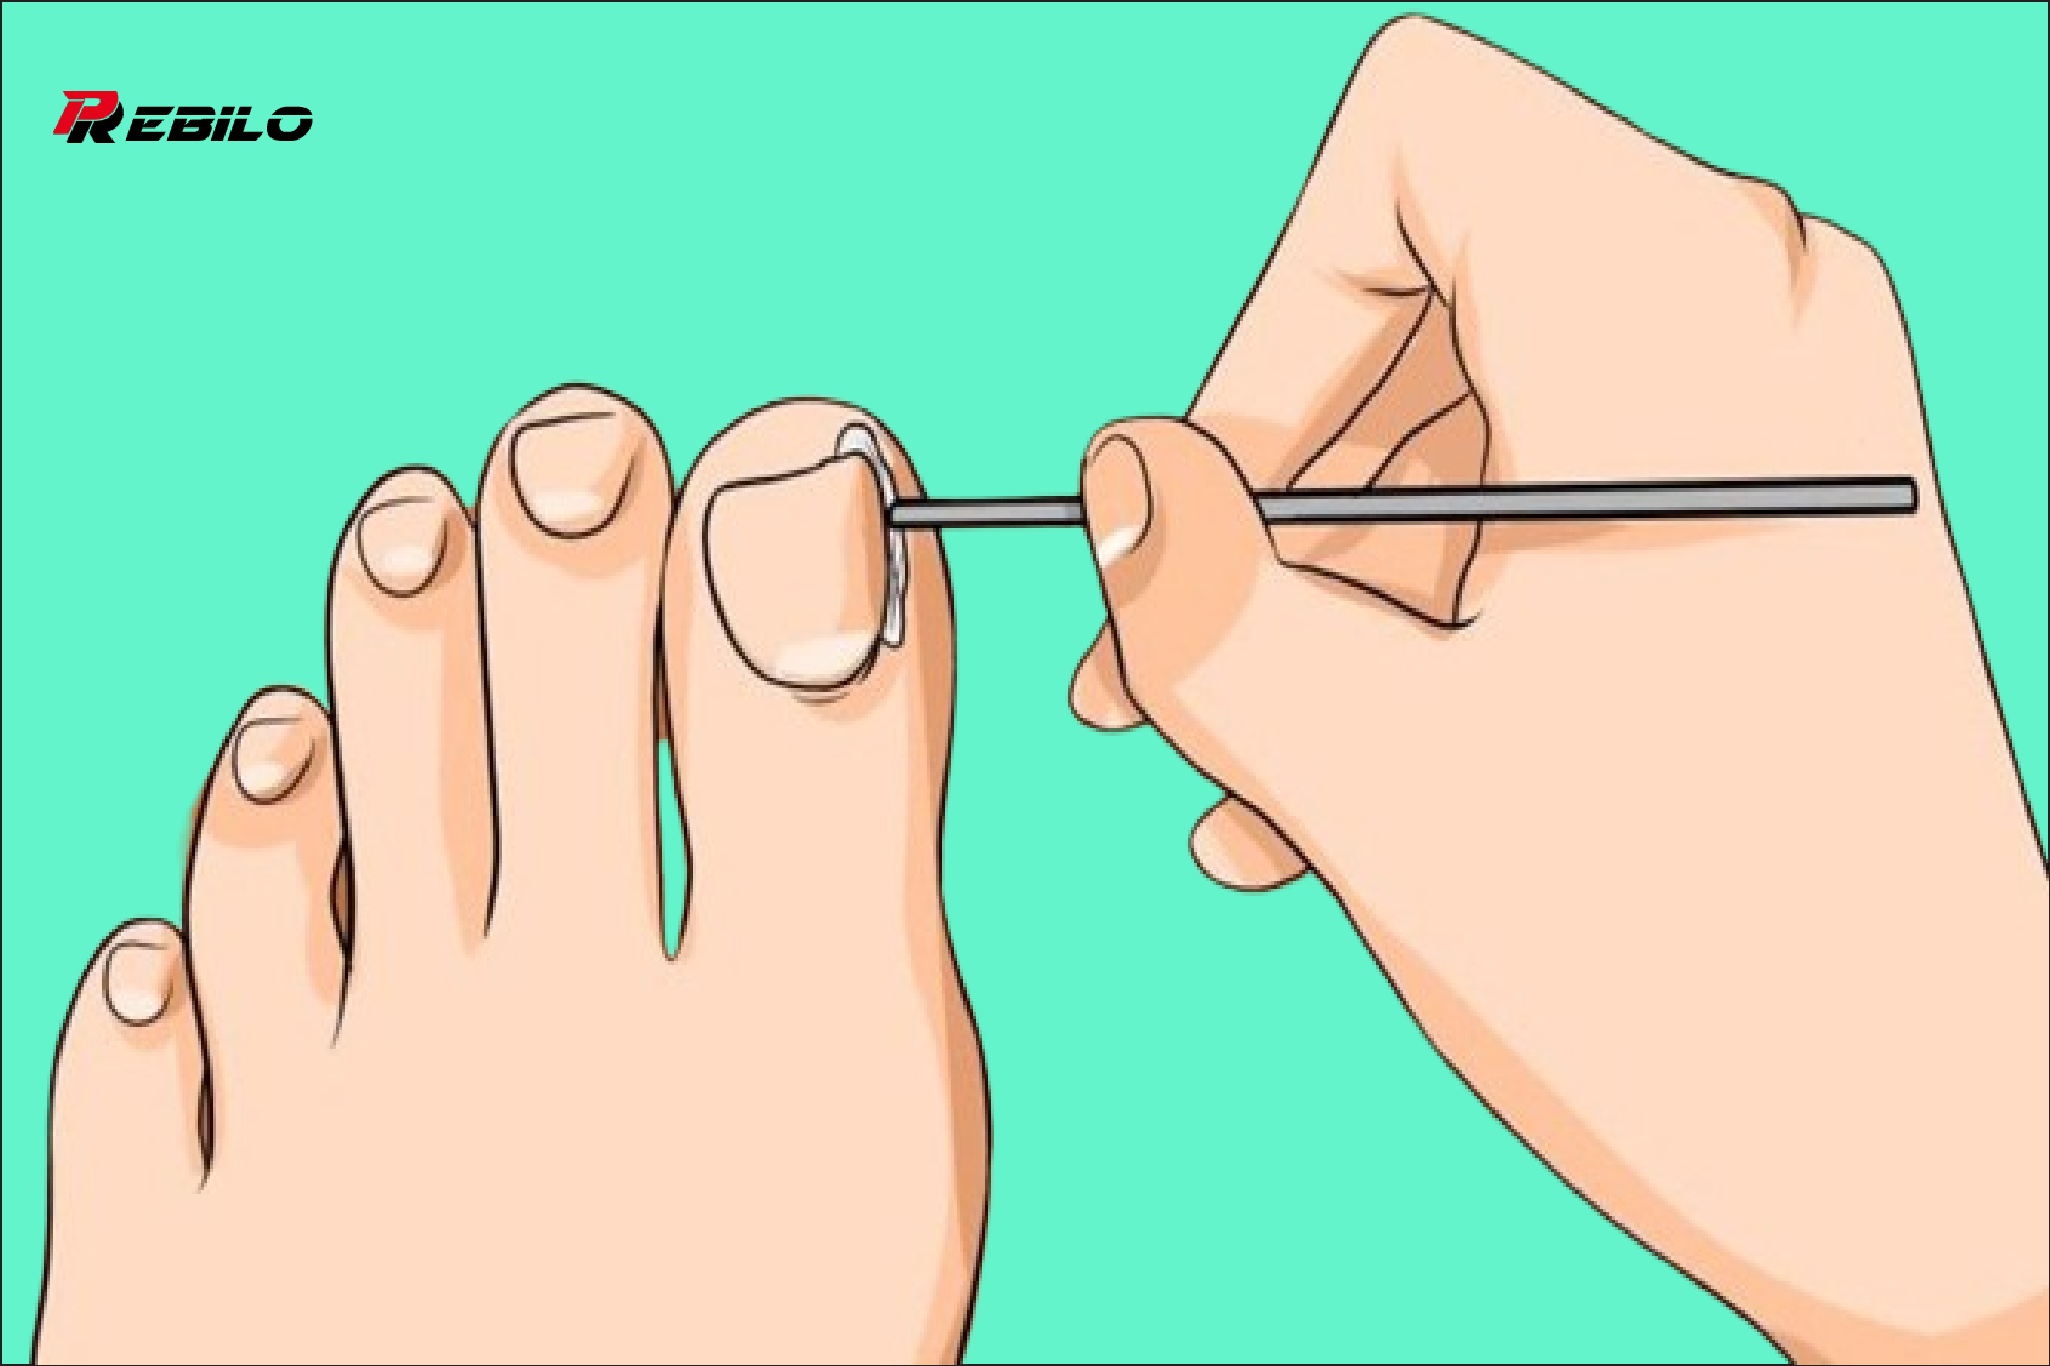 How to get rid of ingrown toenail